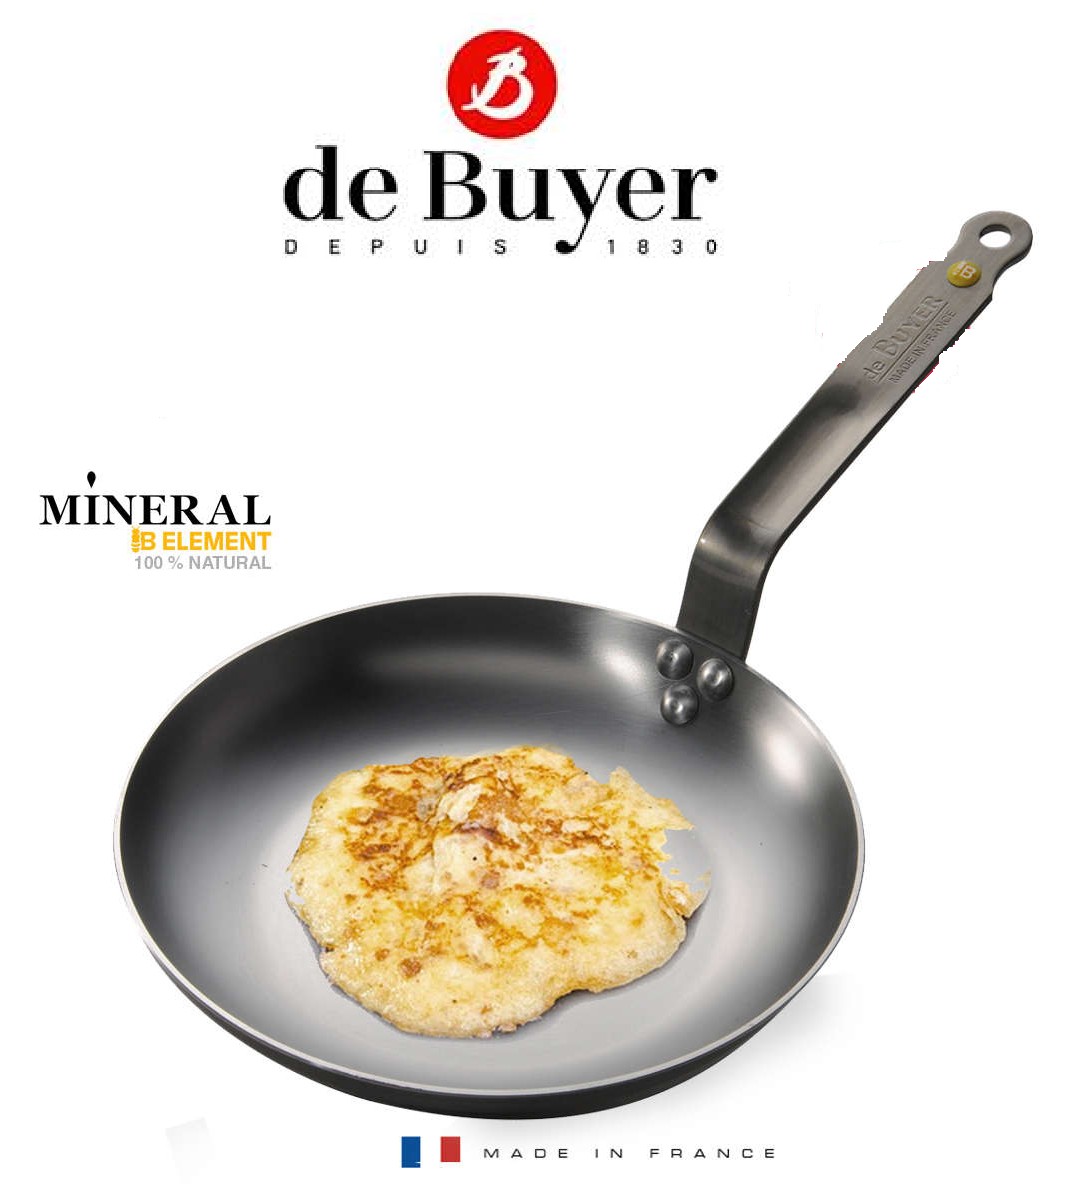 https://www.comercialcarve.com/10350/sarten-tortillas-hierro-mineral-belement-de-buyer.jpg